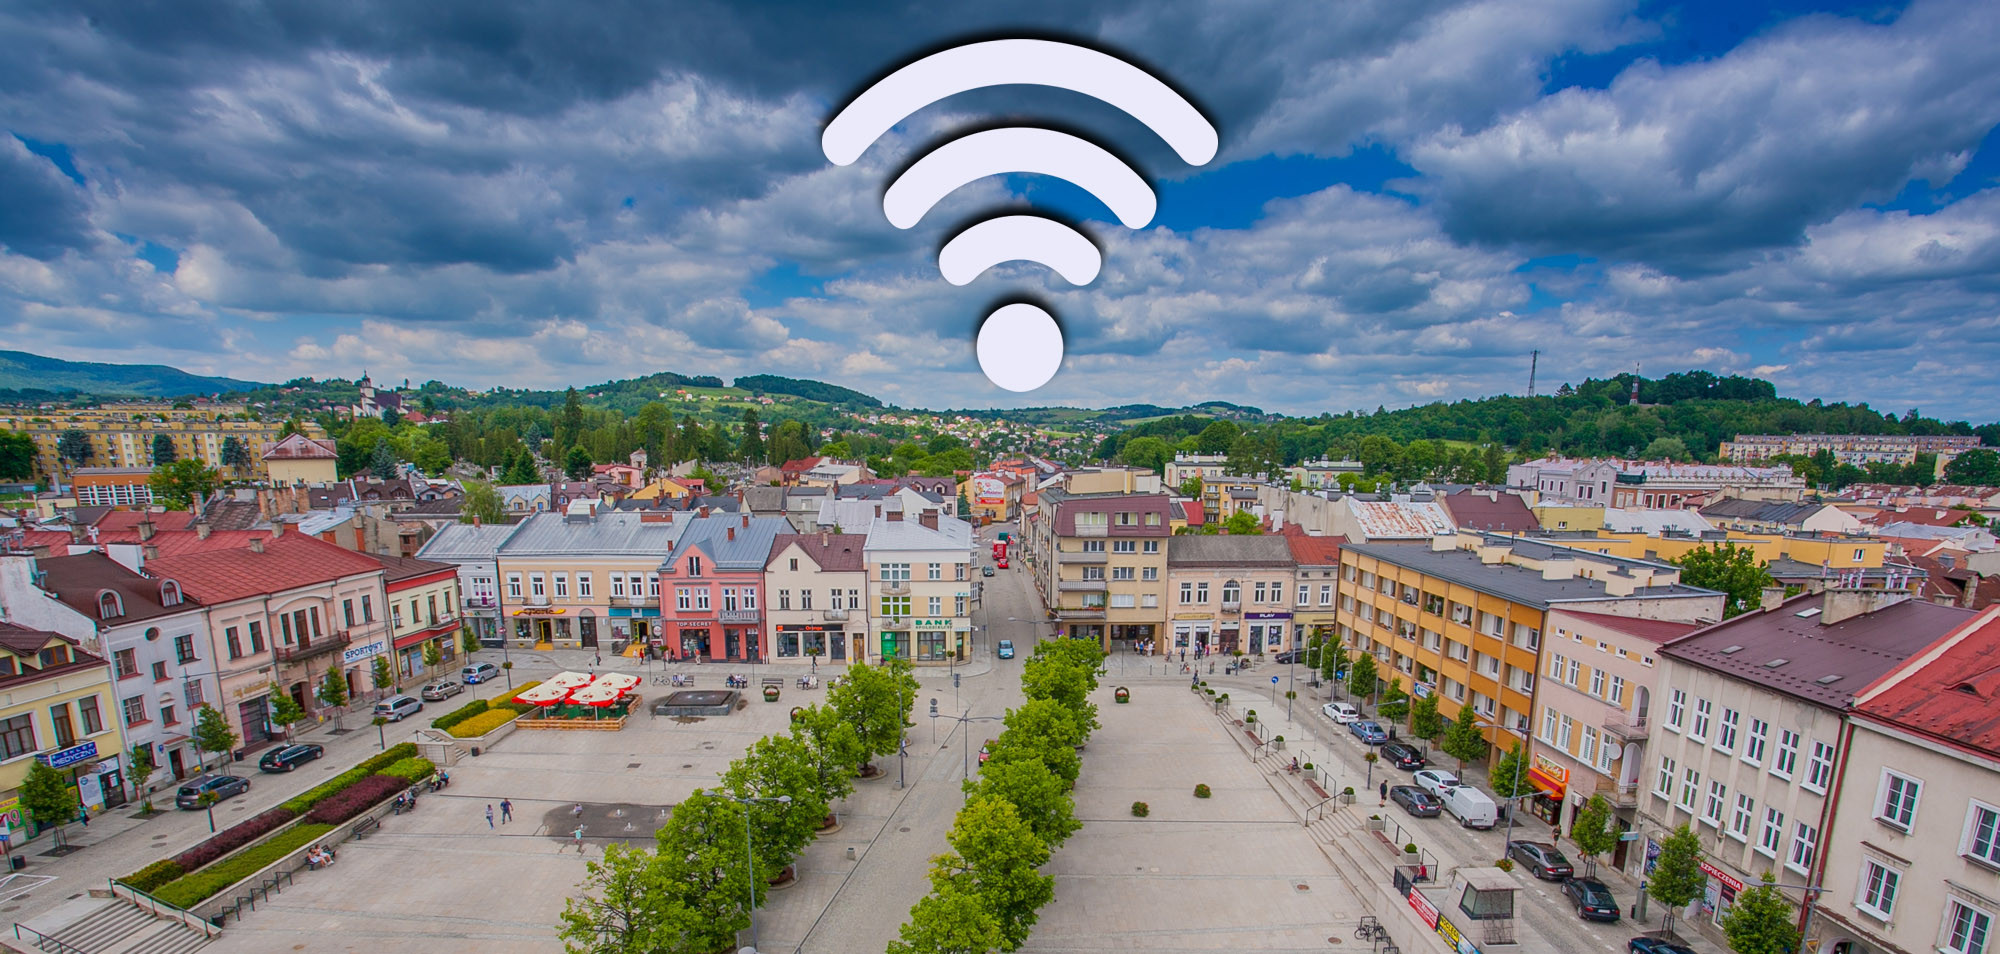 15 tys. euro na darmowe WiFi w Gorlicach!